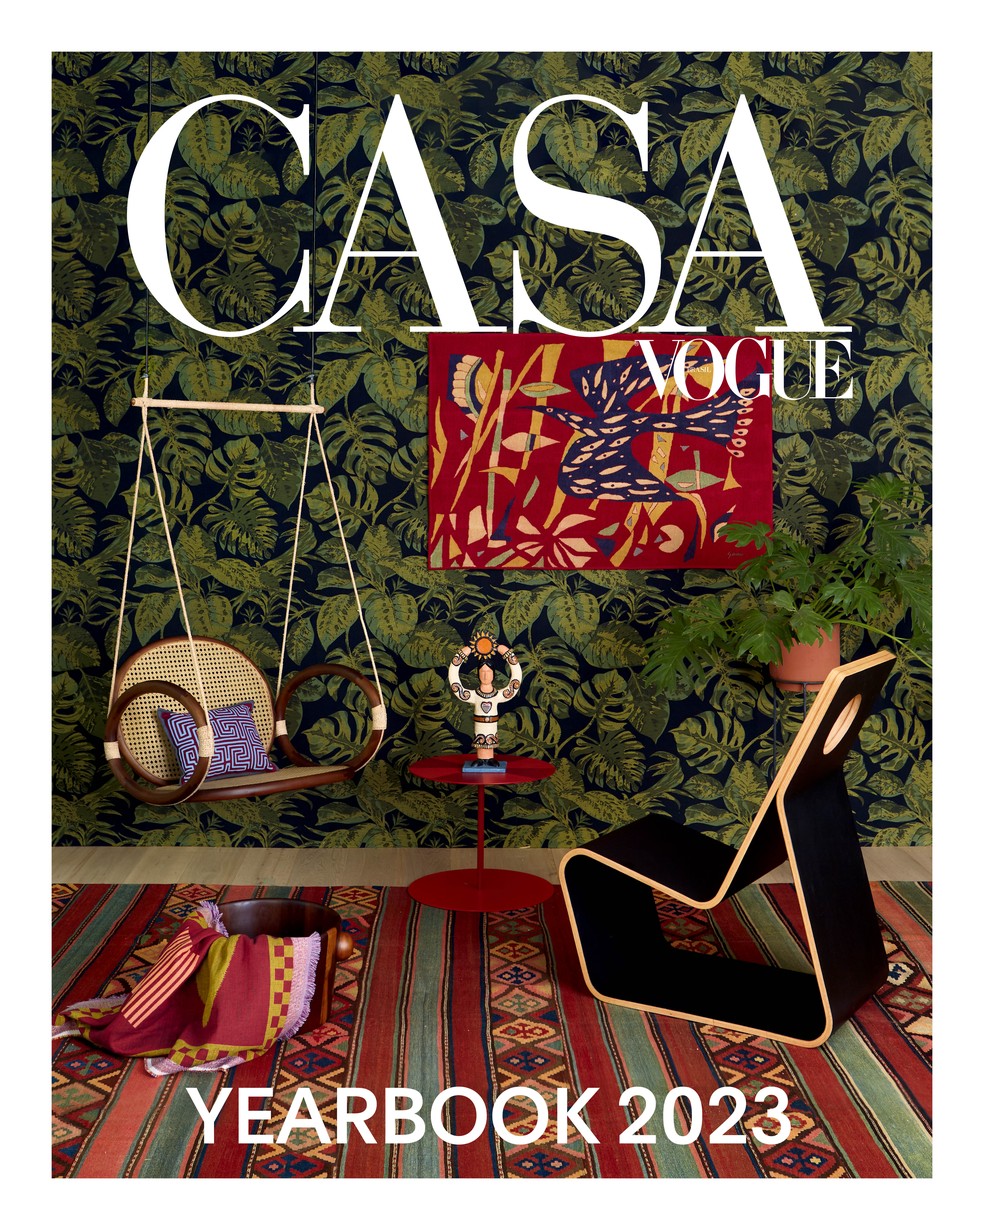 Yearbook 2023 da Casa Vogue reúne mais de 30 projetos com as últimas tendências de arquitetura, decoração e design — Foto: Rogério Cavalcanti